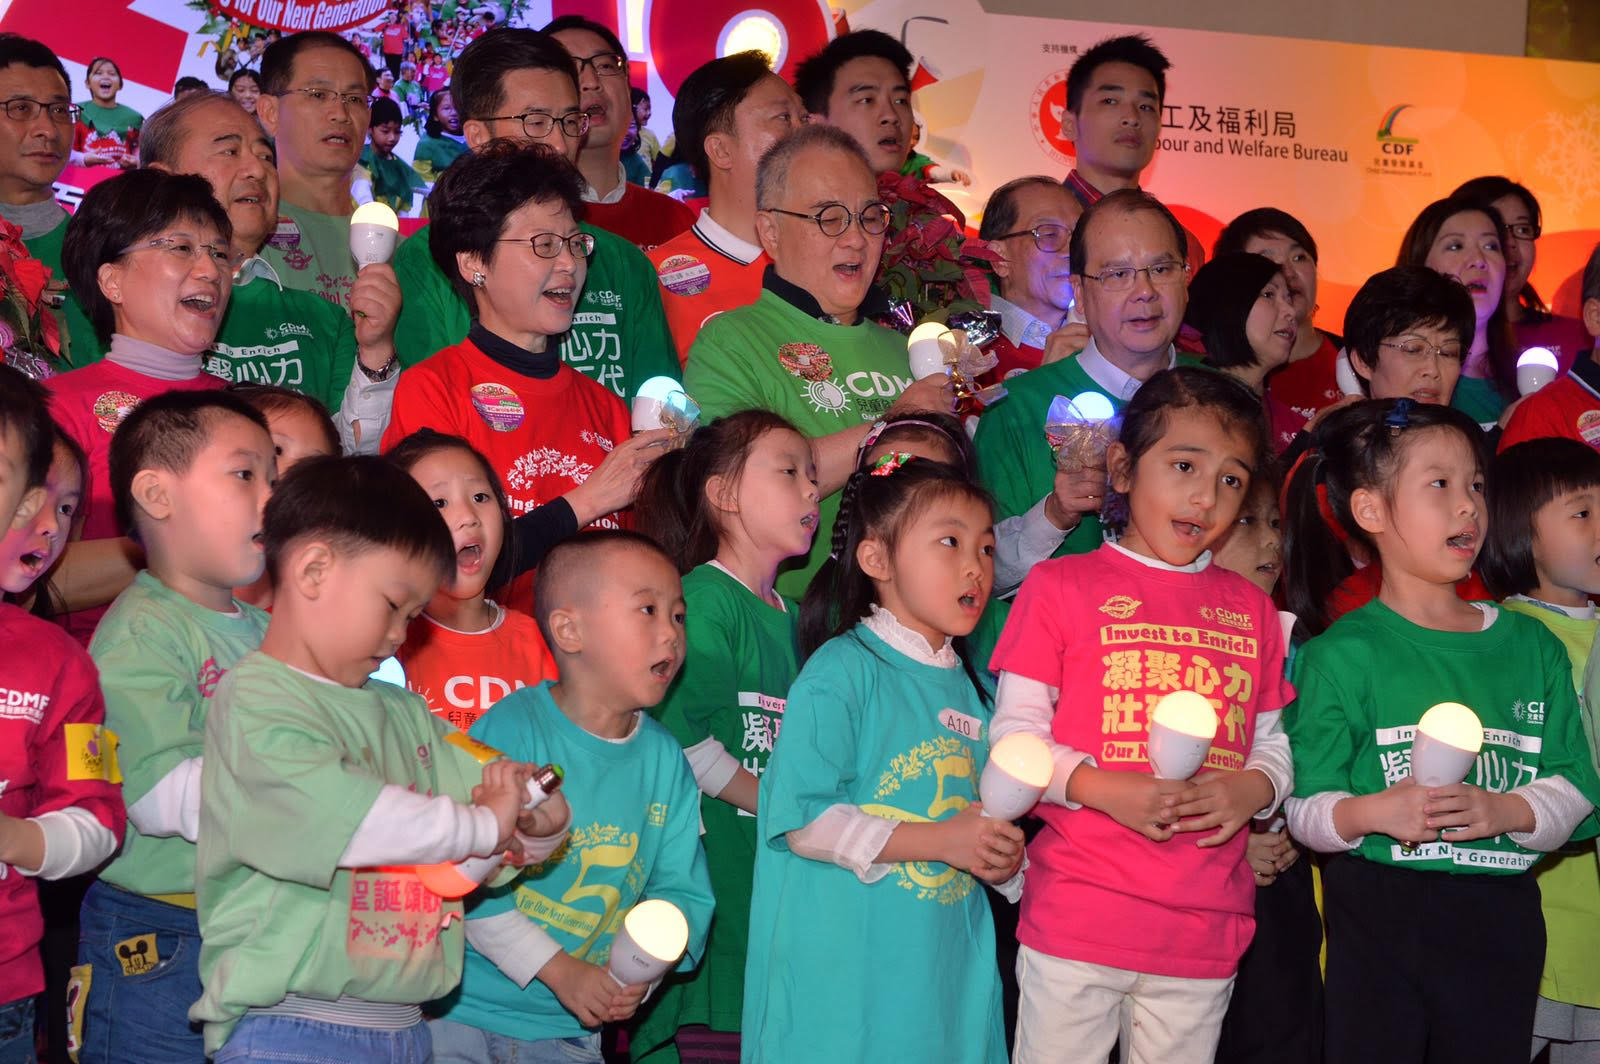 劳工及福利局局长张建宗出席儿童发展配对基金举办的圣诞颂歌节，与小朋友一起唱出圣诞歌曲。